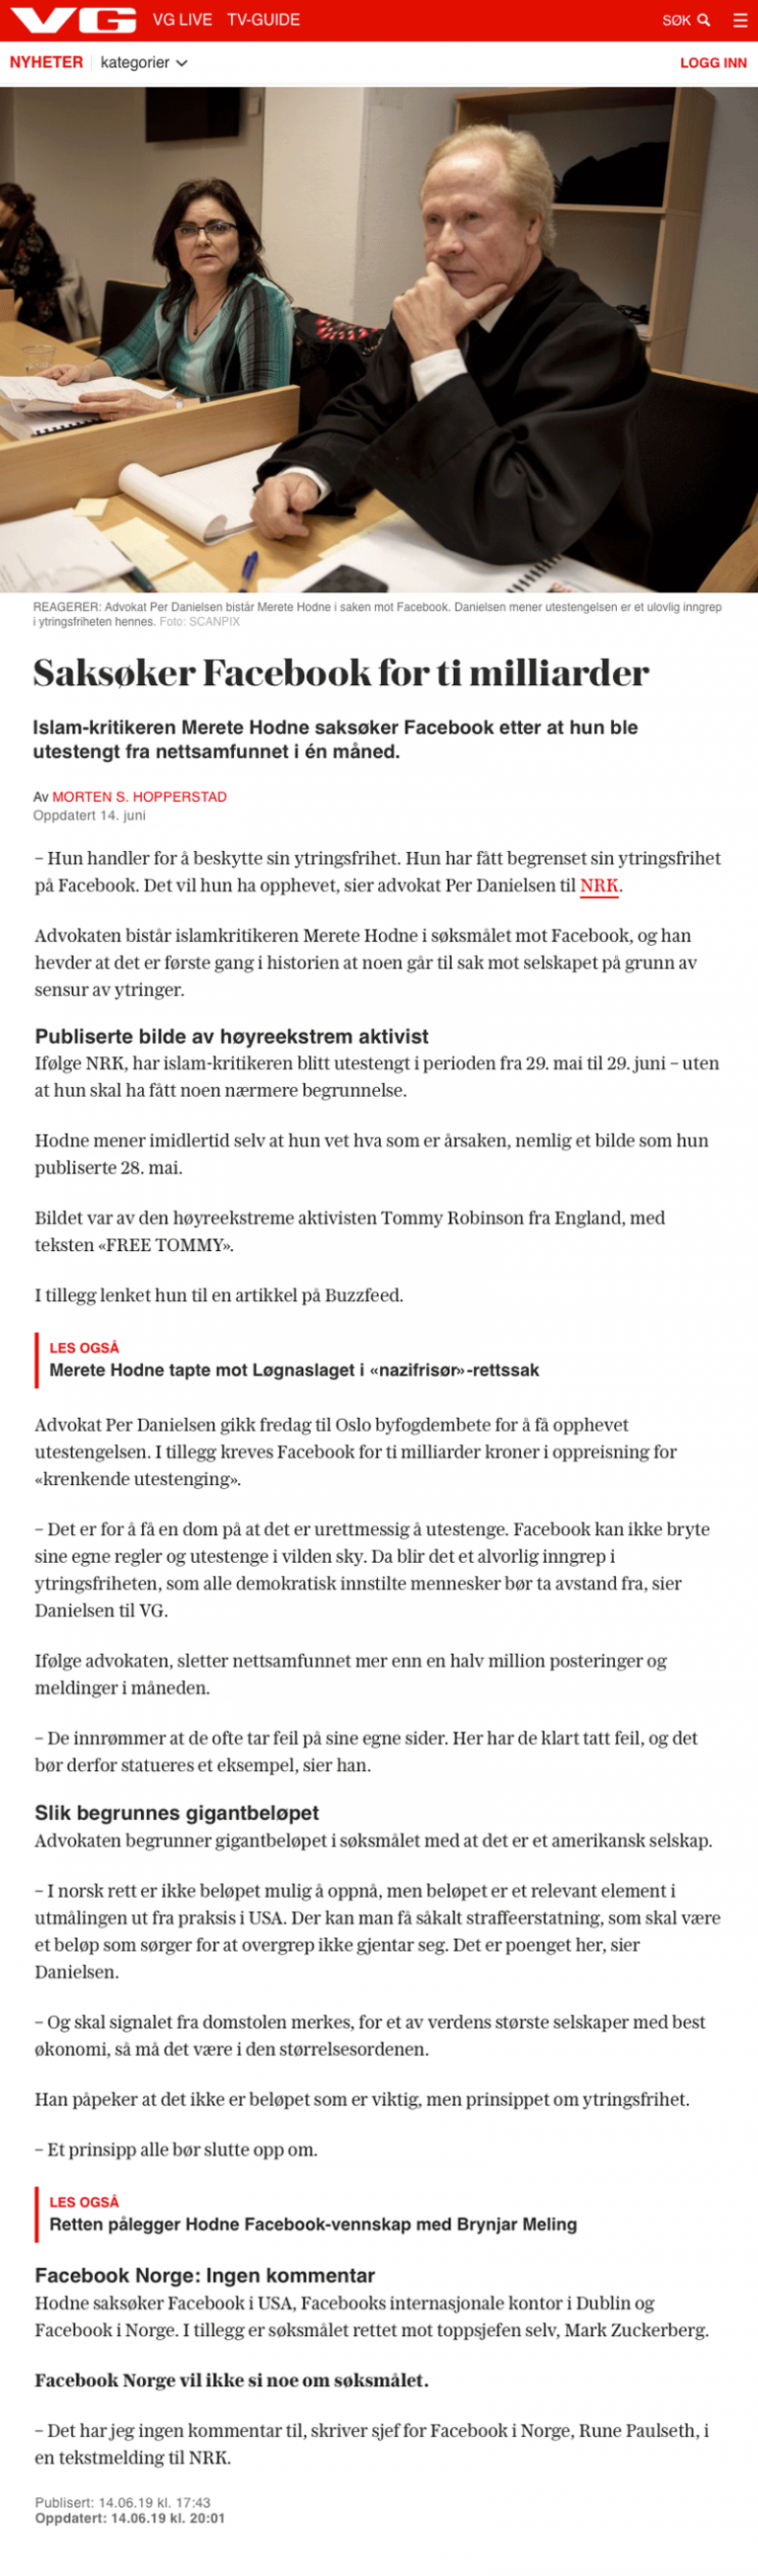 Ærekrenkelse Saksøker Facebook for 10 milliarder. Advokat Danielsen & Co. Per Danielsen. Advokat i Oslo.